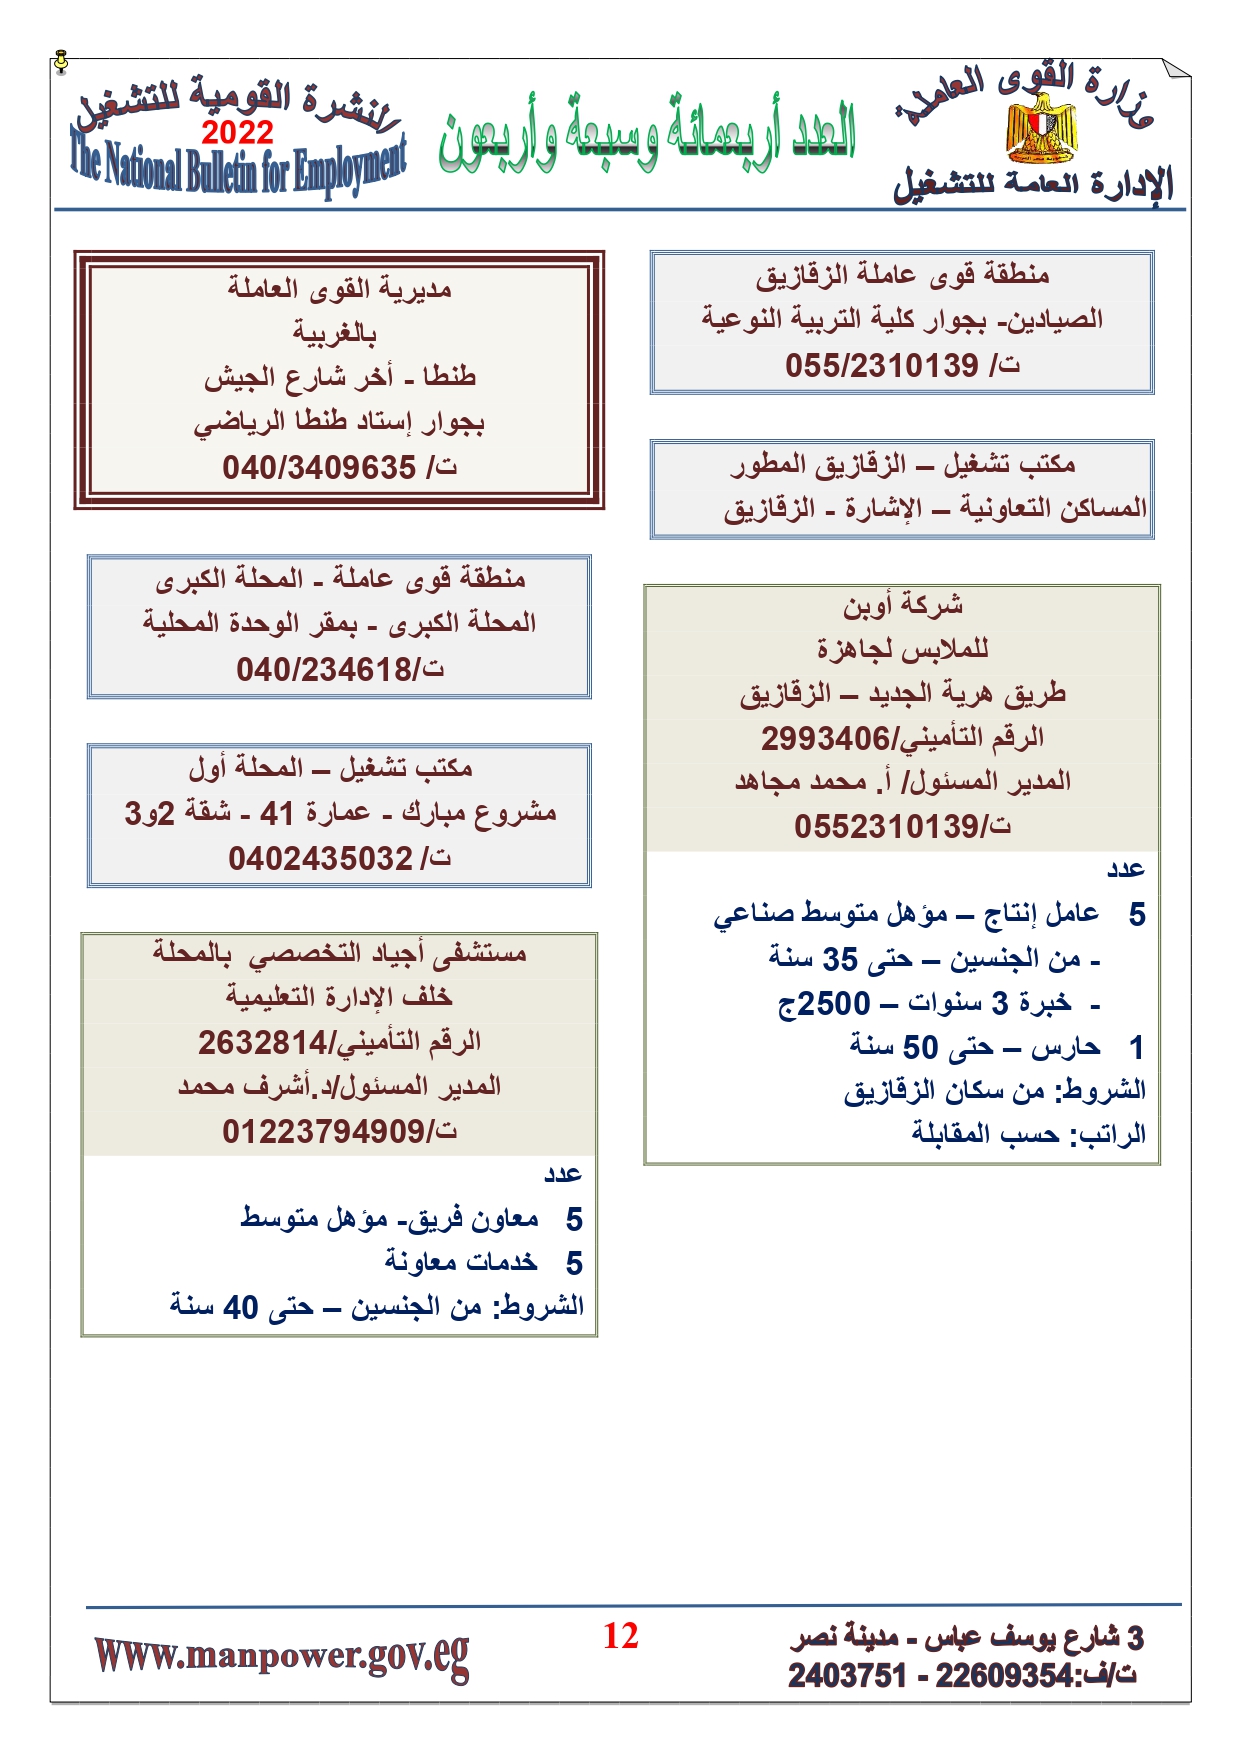 وظائف خالية بمصر وزارة القوي العاملة تعلن عن 2530 وظيفة شاغرة لجميع المؤهلات خلال فبراير ومارس 2022 8